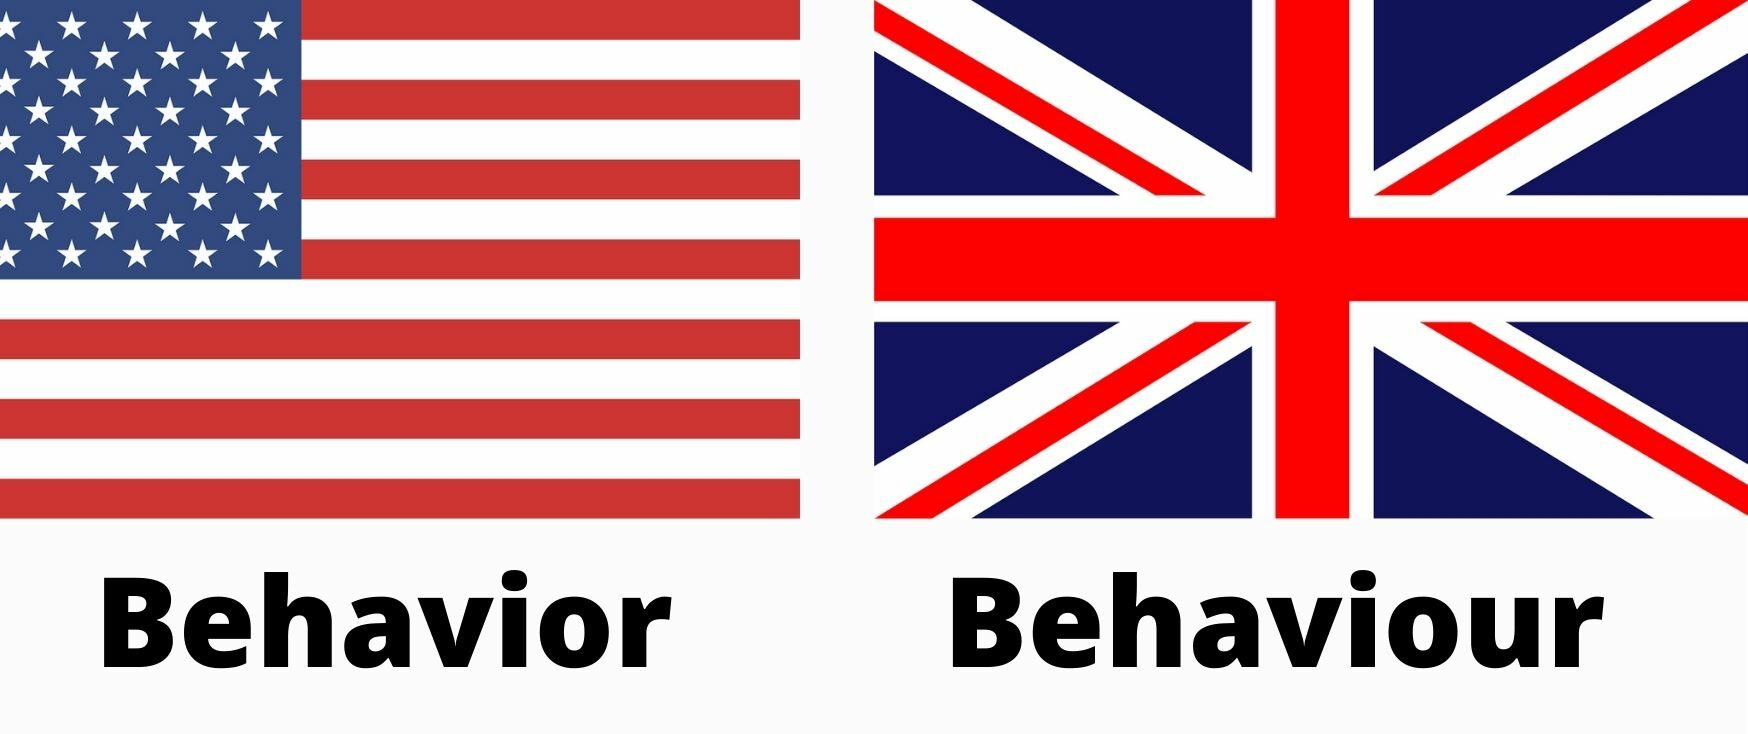 Behavior vs. Behaviour